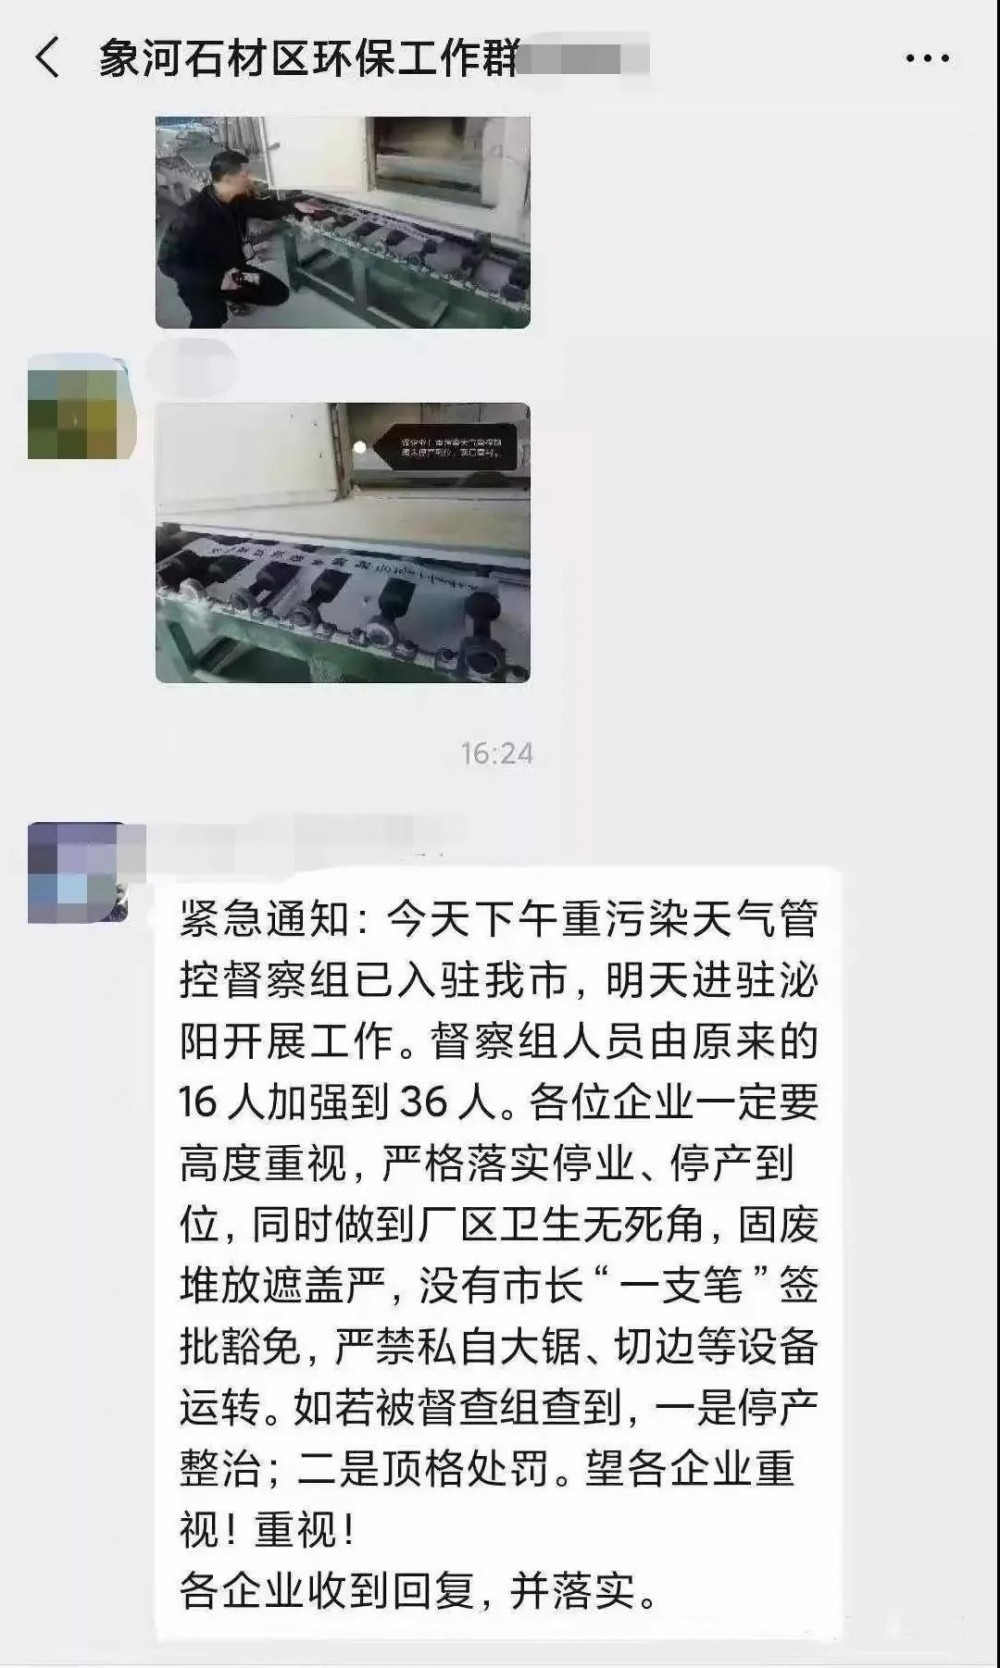 重污染督察组进驻河南泌阳县，石材企业停产、严禁设备运转